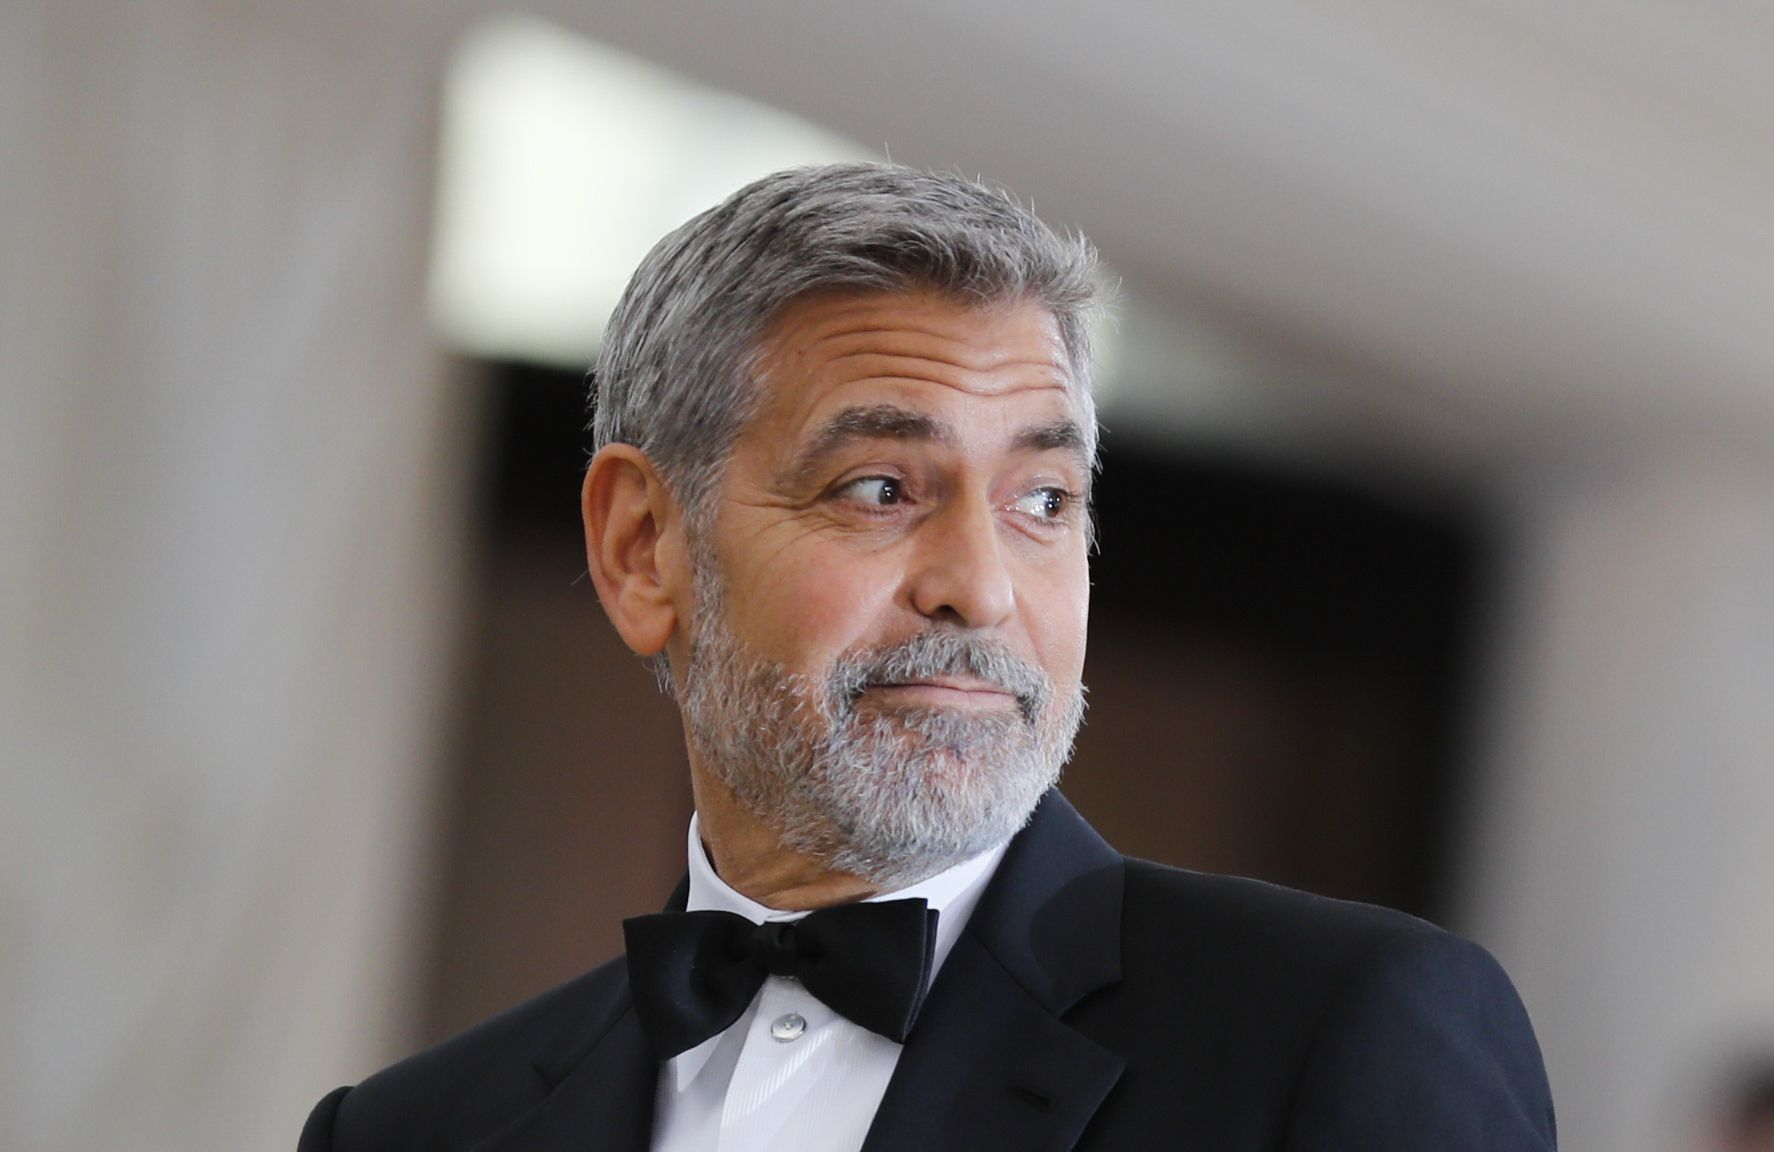 9 George Clooney - REUTERS